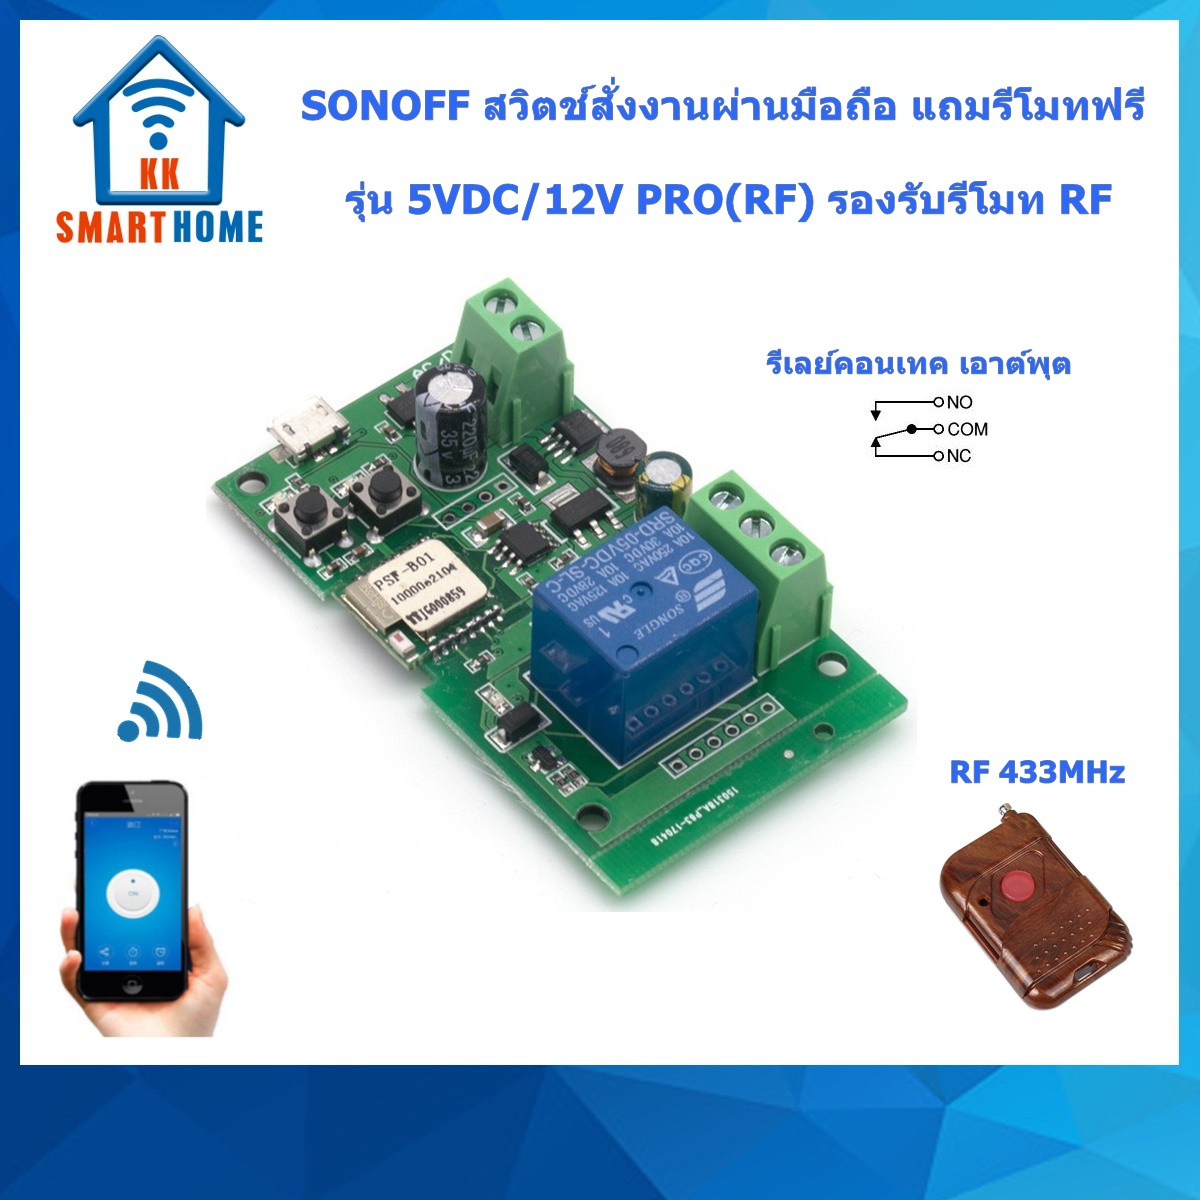 SONOFF 5VDC/12VDC สวิตช์สั่งงานด้วยมือถือรุ่น อินพุต 5 VDC/12VDC รองรับรีโมท RF ฟรีรีโมท